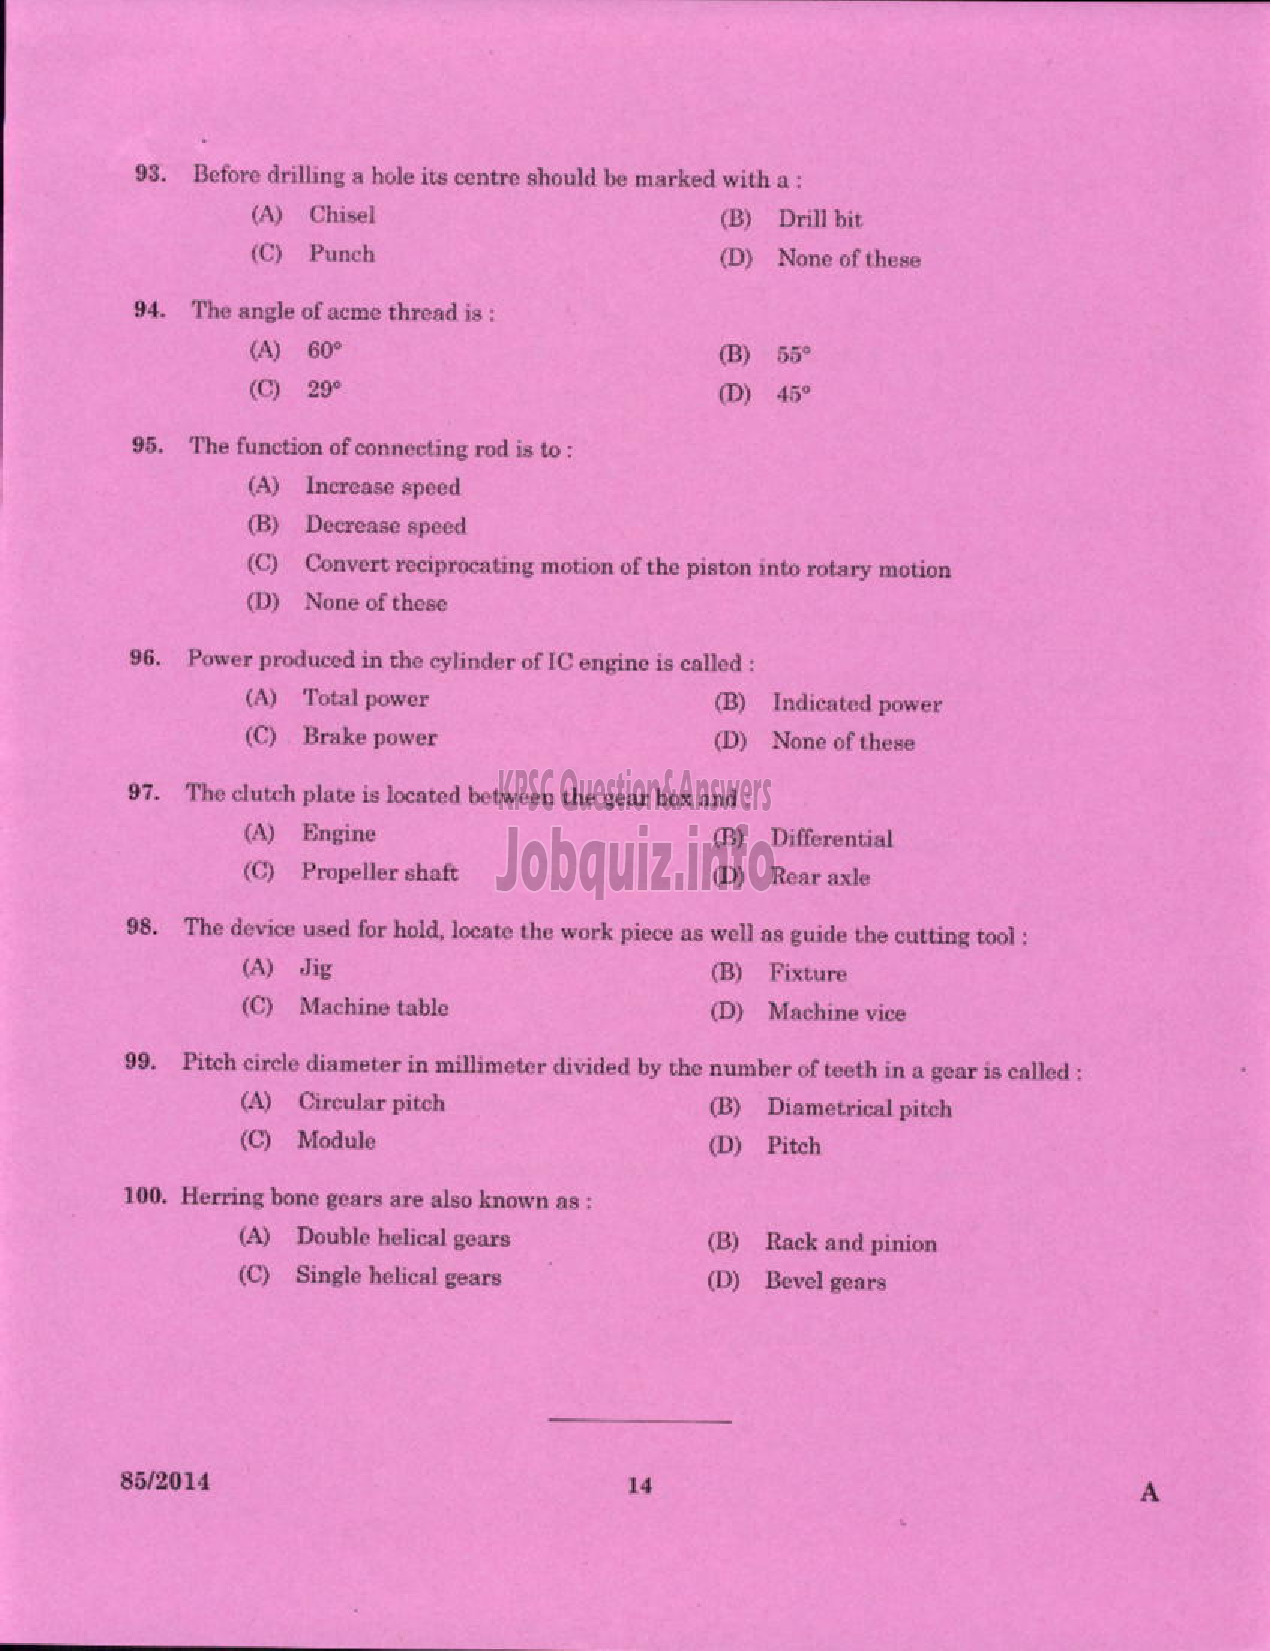 Kerala PSC Question Paper - TECHNICIAN GR II GENERAL MECHANIC GENERAL SOCIETY CATEGORY KCMMF LTD-12